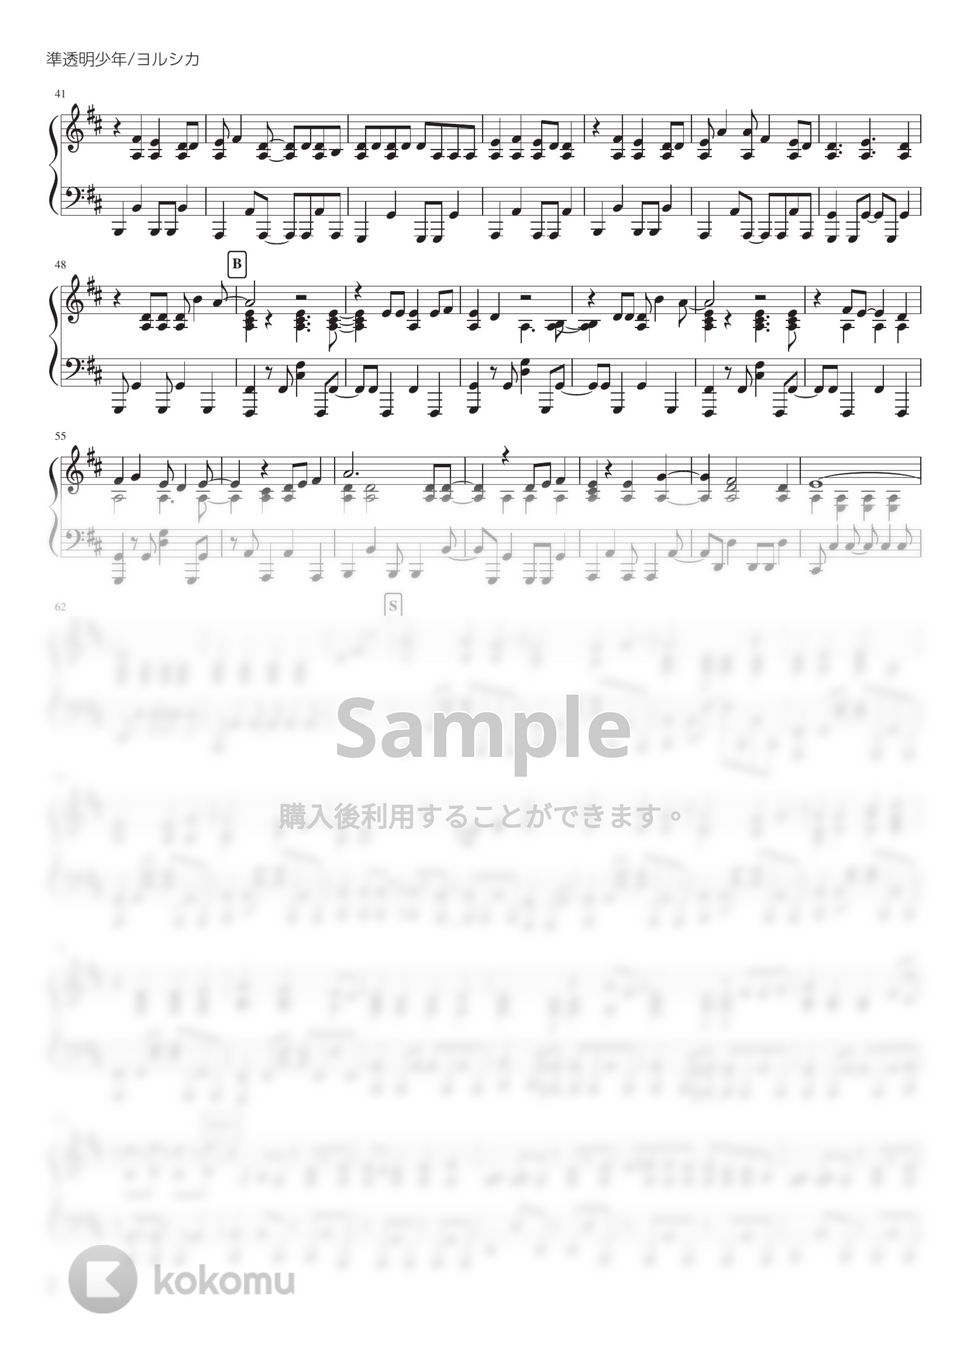 ヨルシカ - 準透明少年 (PianoSolo) by 深根 / Fukane